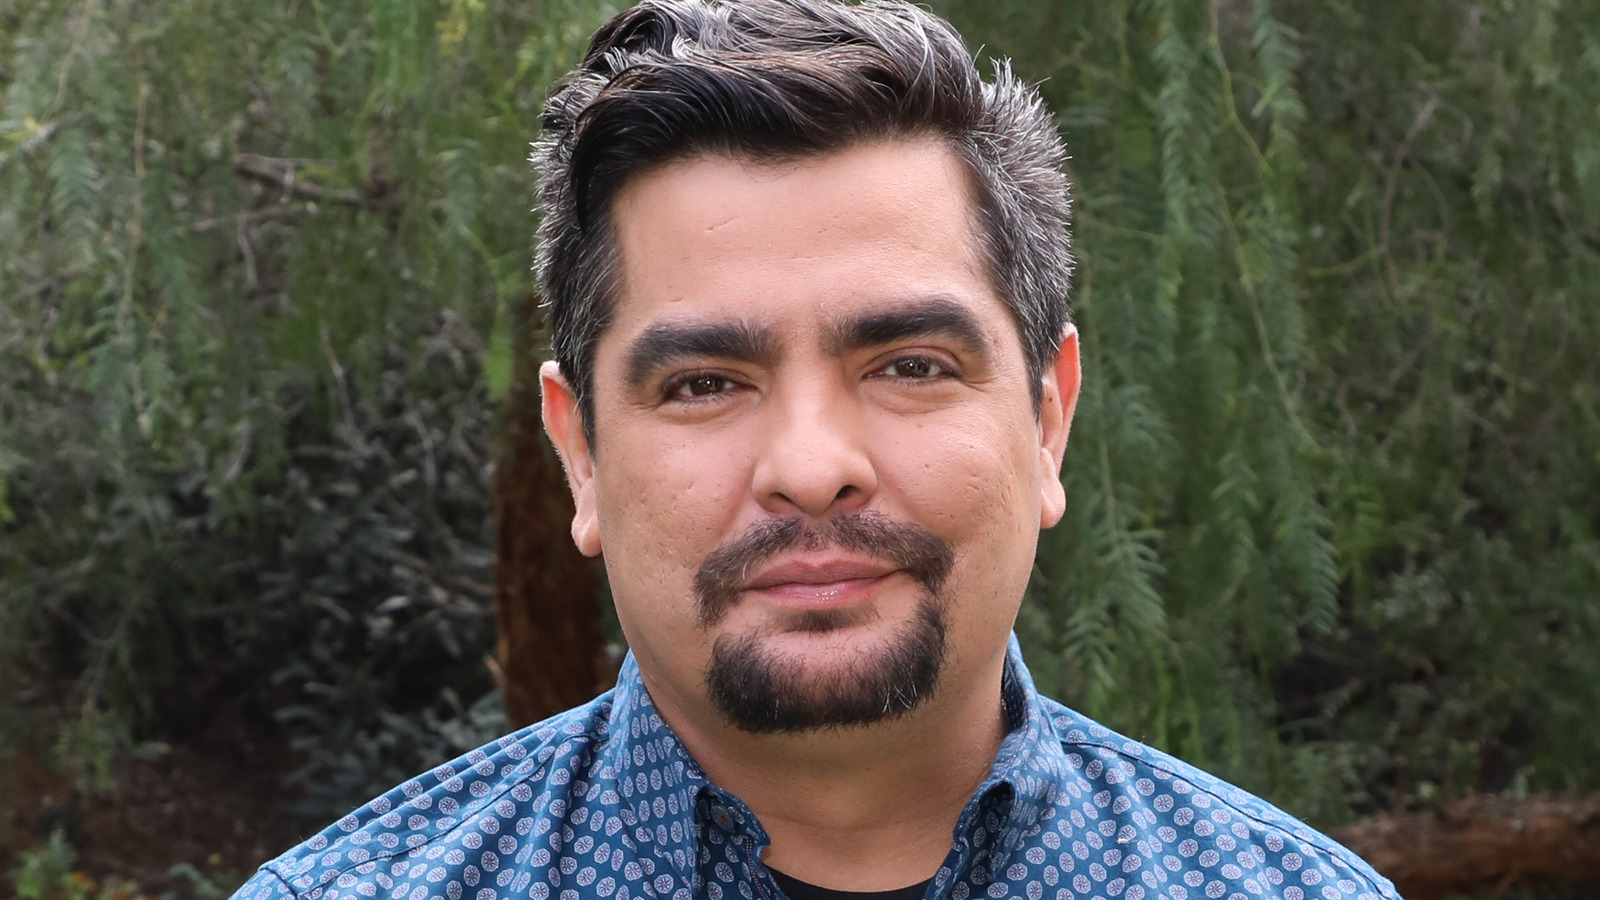 Aarón Sanchez puts the heat Food Network's Heat Seekers